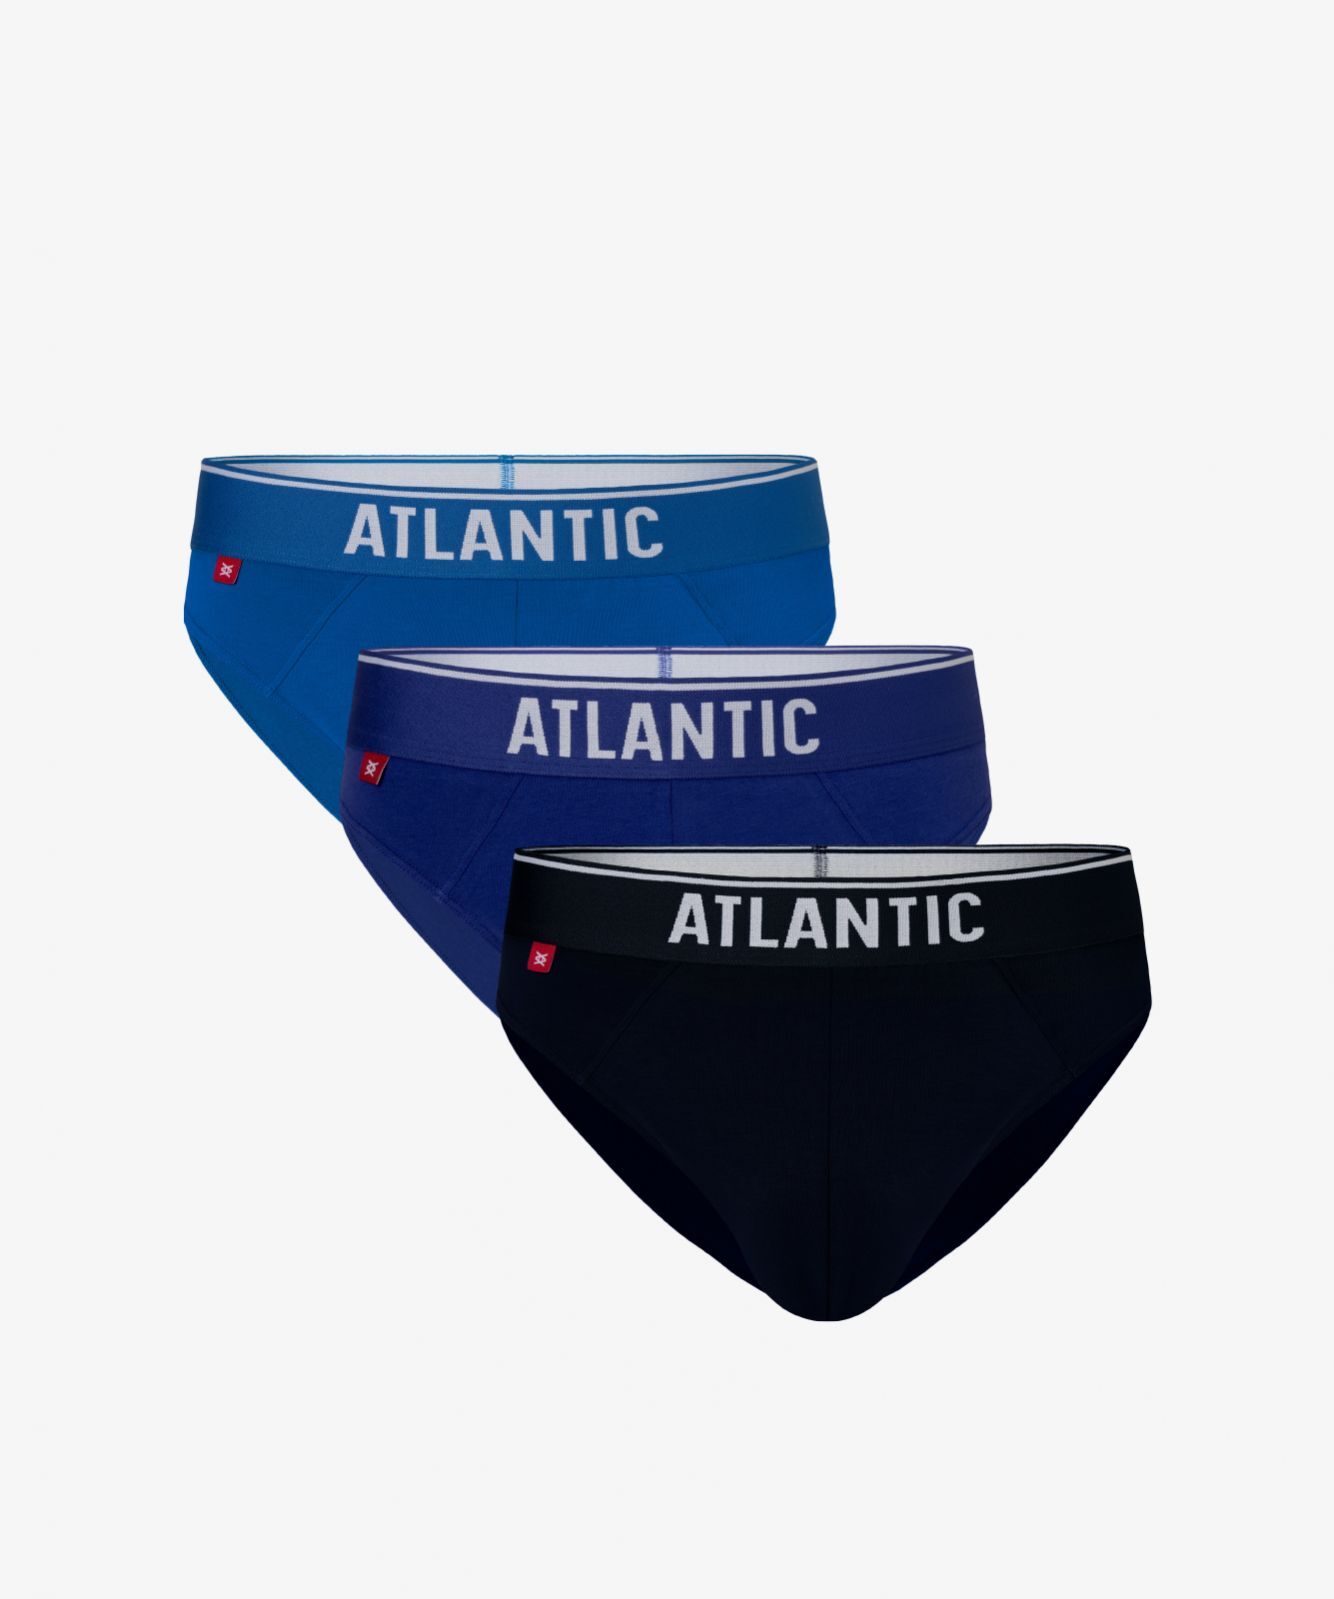 Мужские трусы слипы спорт Atlantic, набор 3 шт., хлопок, бирюзовые + голубые + темно-синие, 3MP-125